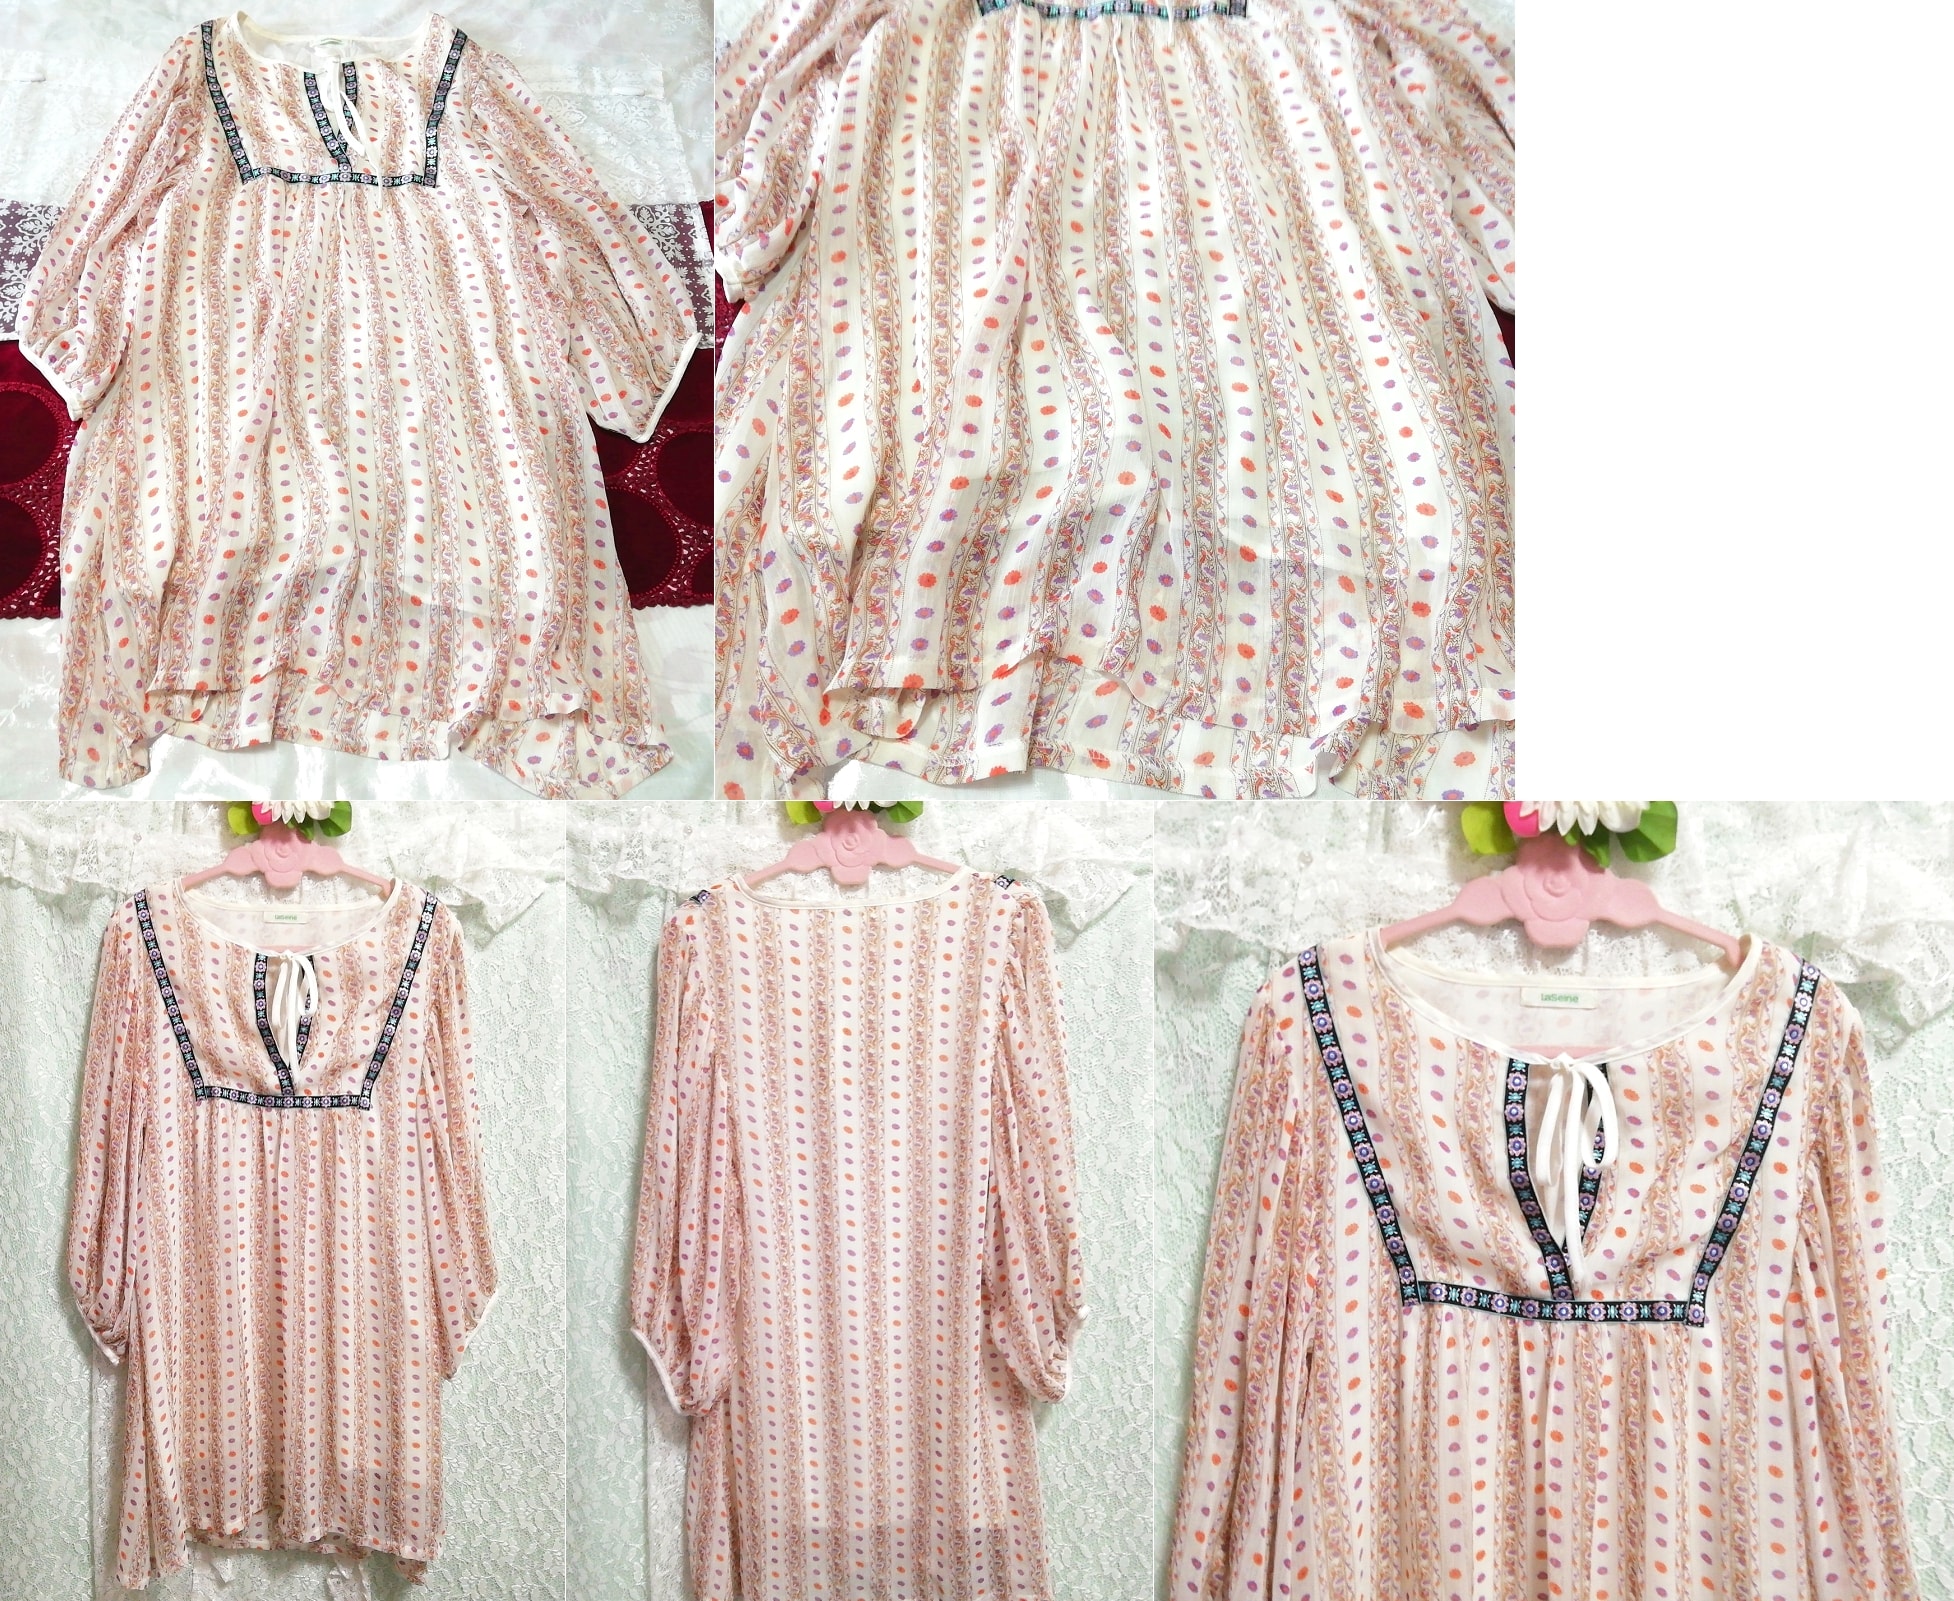 White chiffon ethnic pattern tunic negligee nightgown nightwear dress, knee length skirt, m size